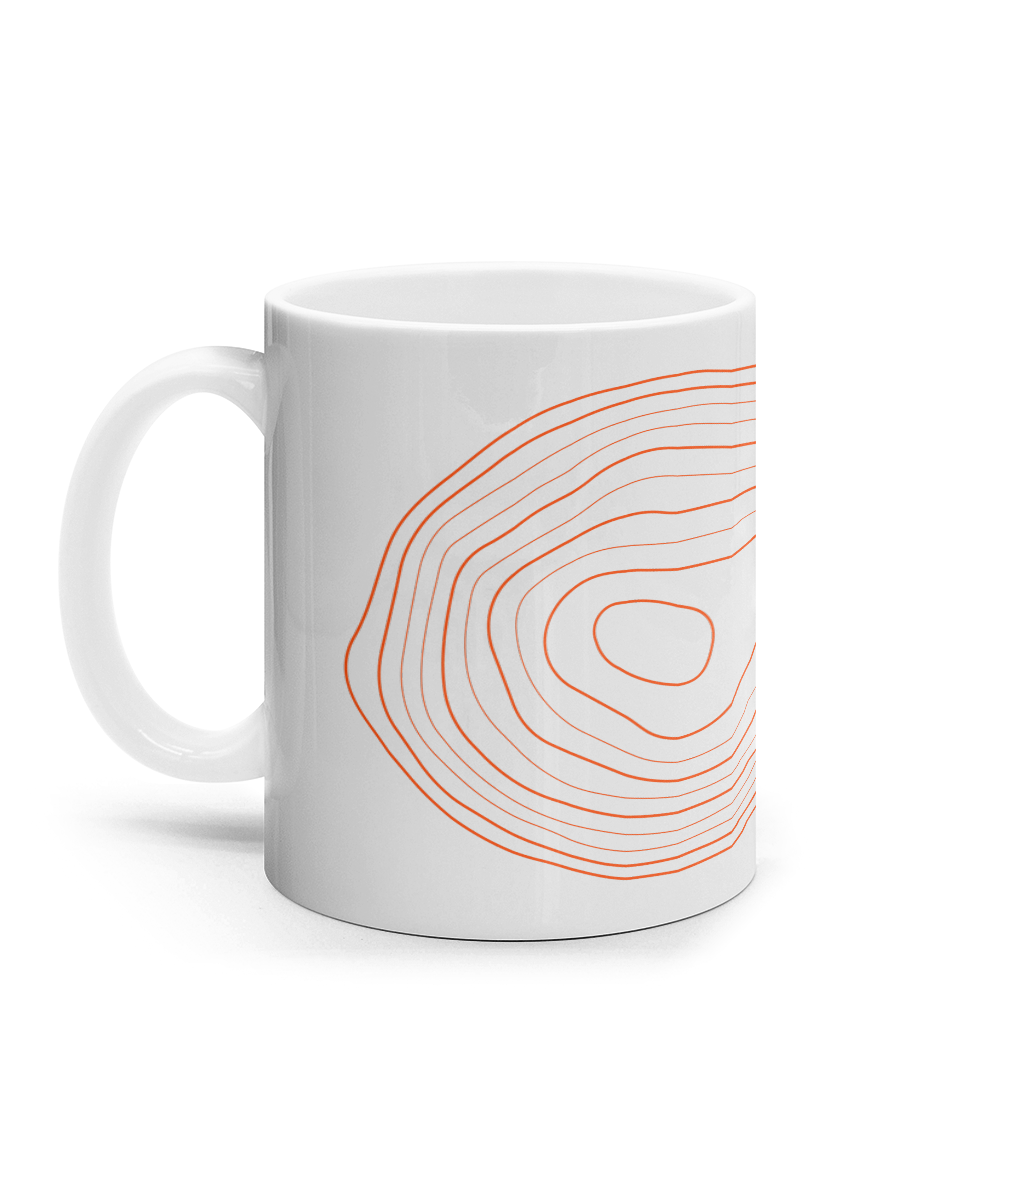 The "scan me you mug!" Mug